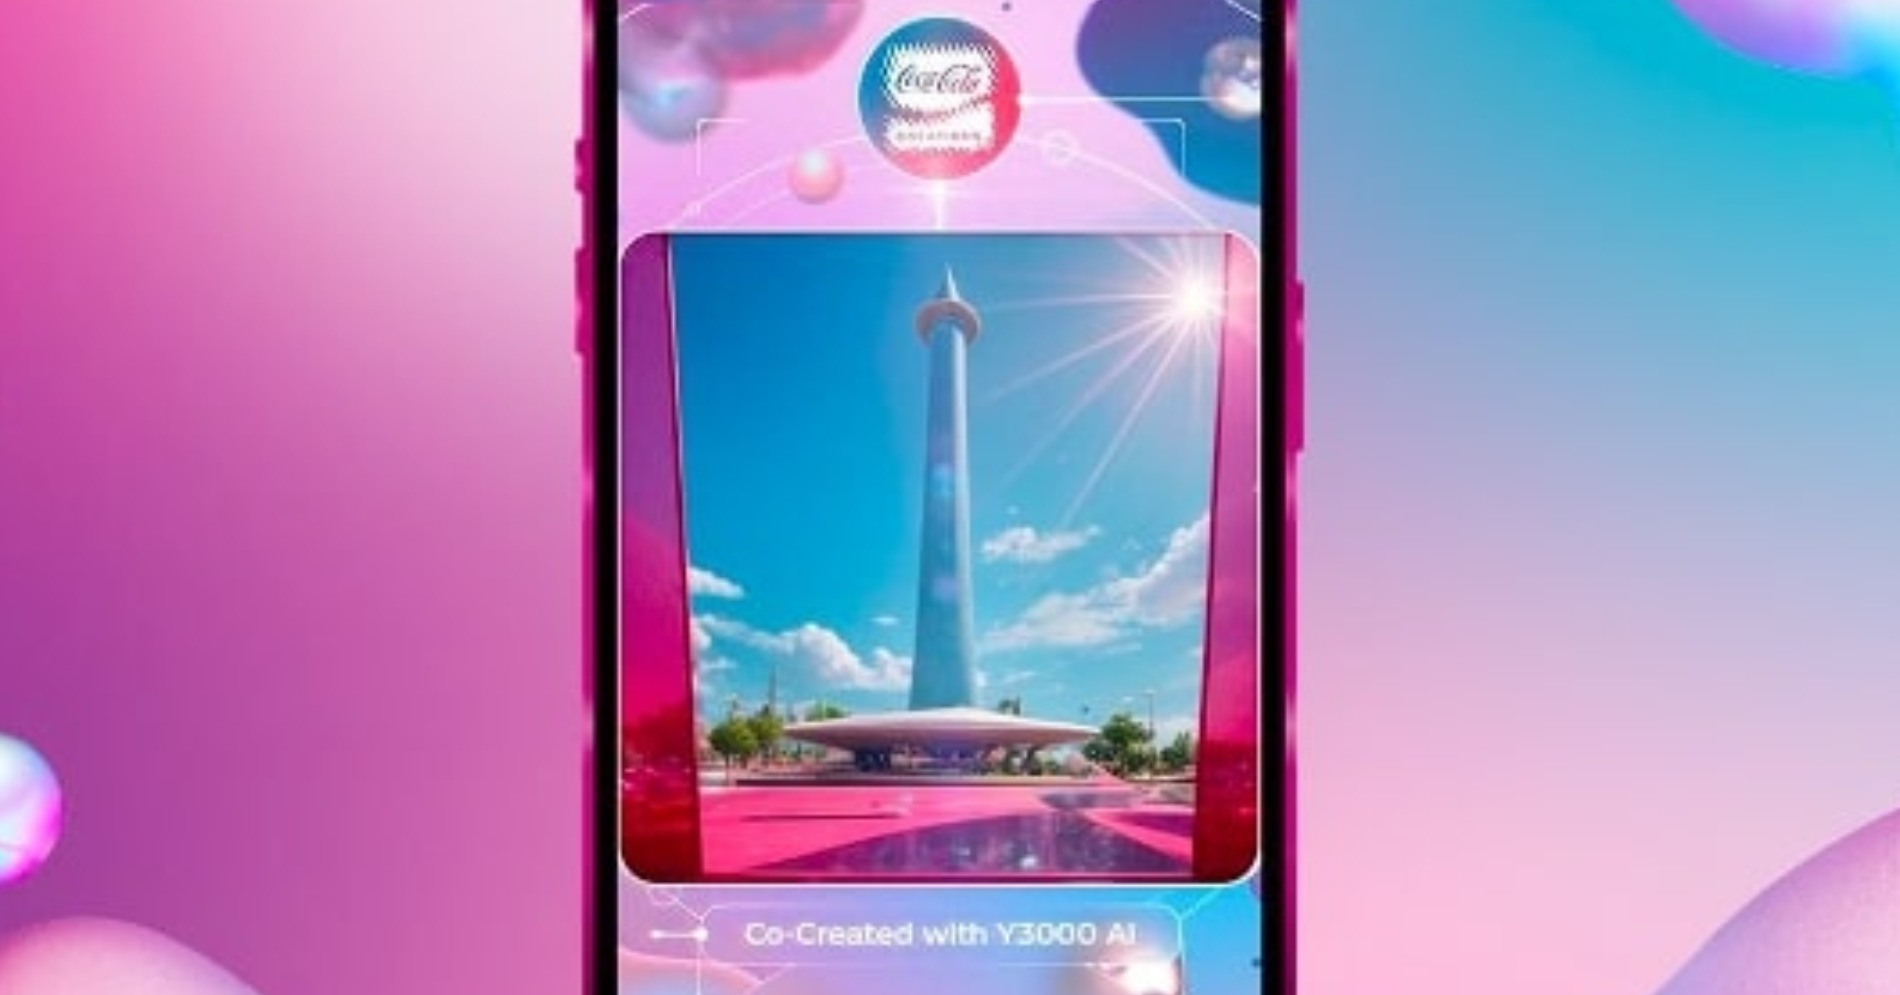 Lanskap Monas dipotret menggunakan AI Lens Coca-Cola Y3000 Zero Sugar (Sumber gambar: Instagram.com/cocacola_id)